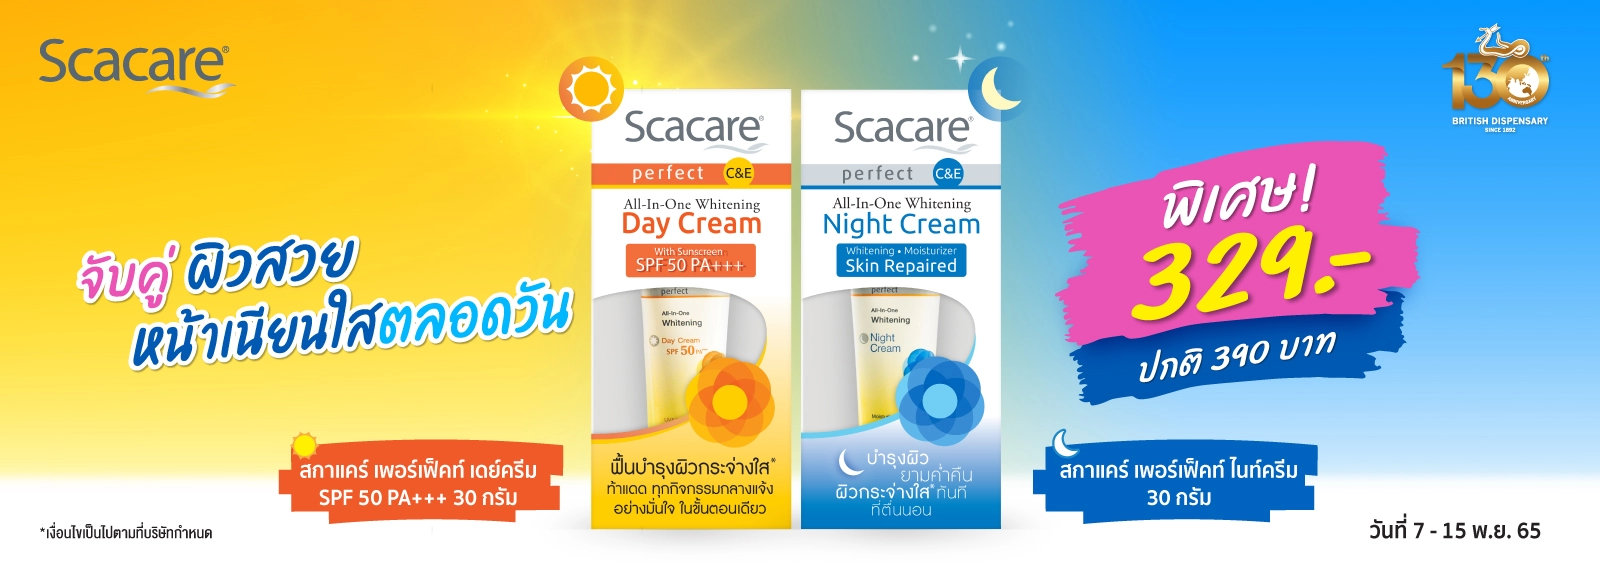 สกาแคร์เดย์ครีม และไนท์ครีม, Scacare Perfect C&E All-in-One Whitening Day Cream SPF50 PA+++